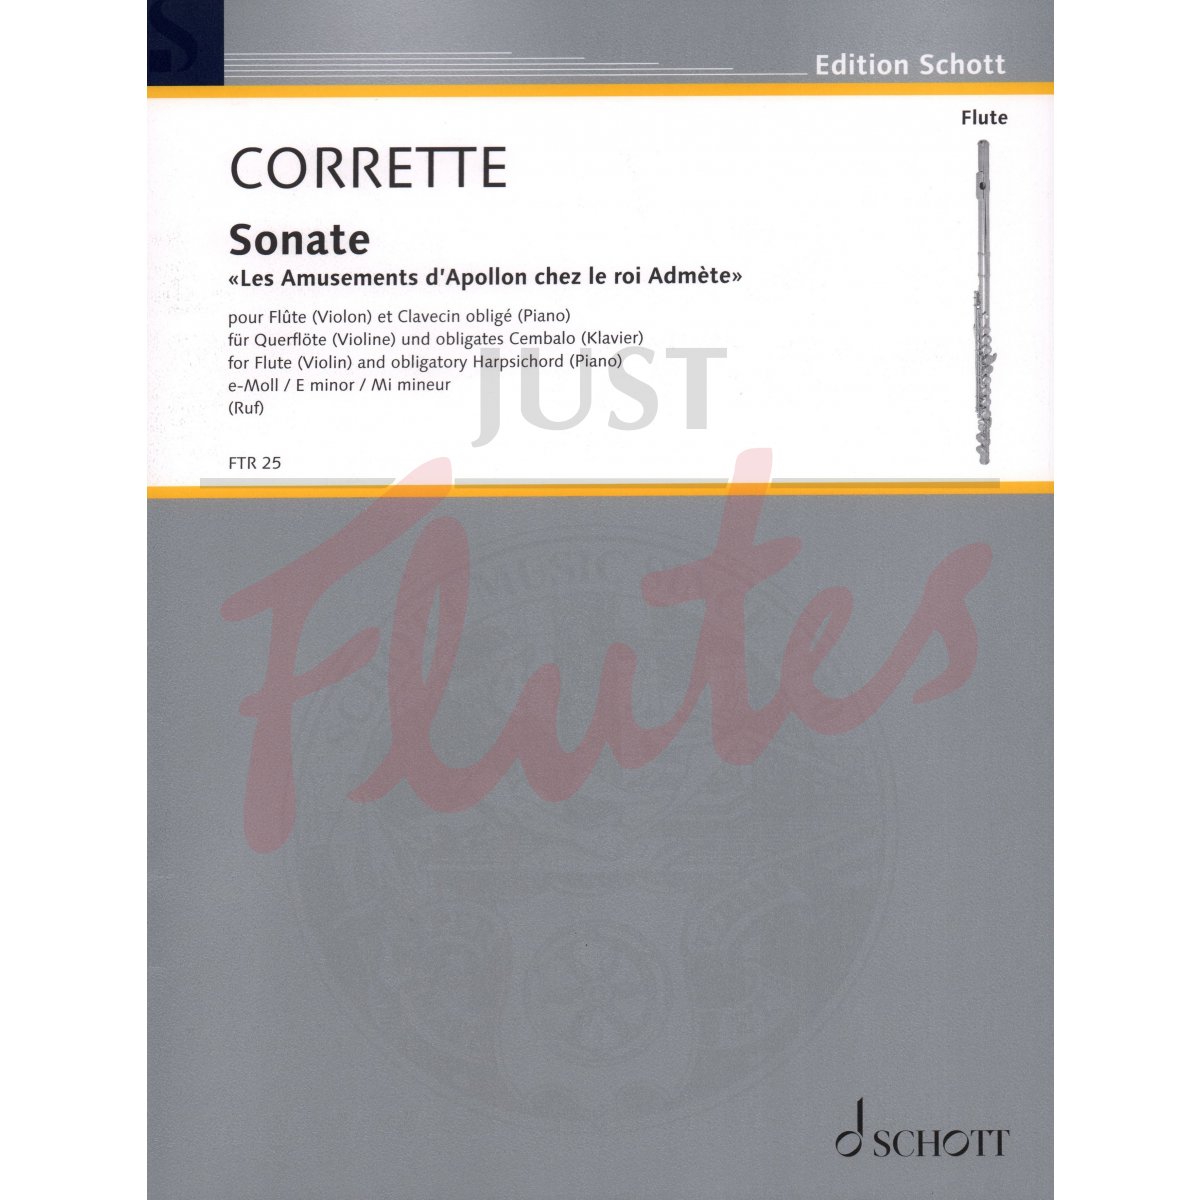 Sonata in E minor for Flute and Piano